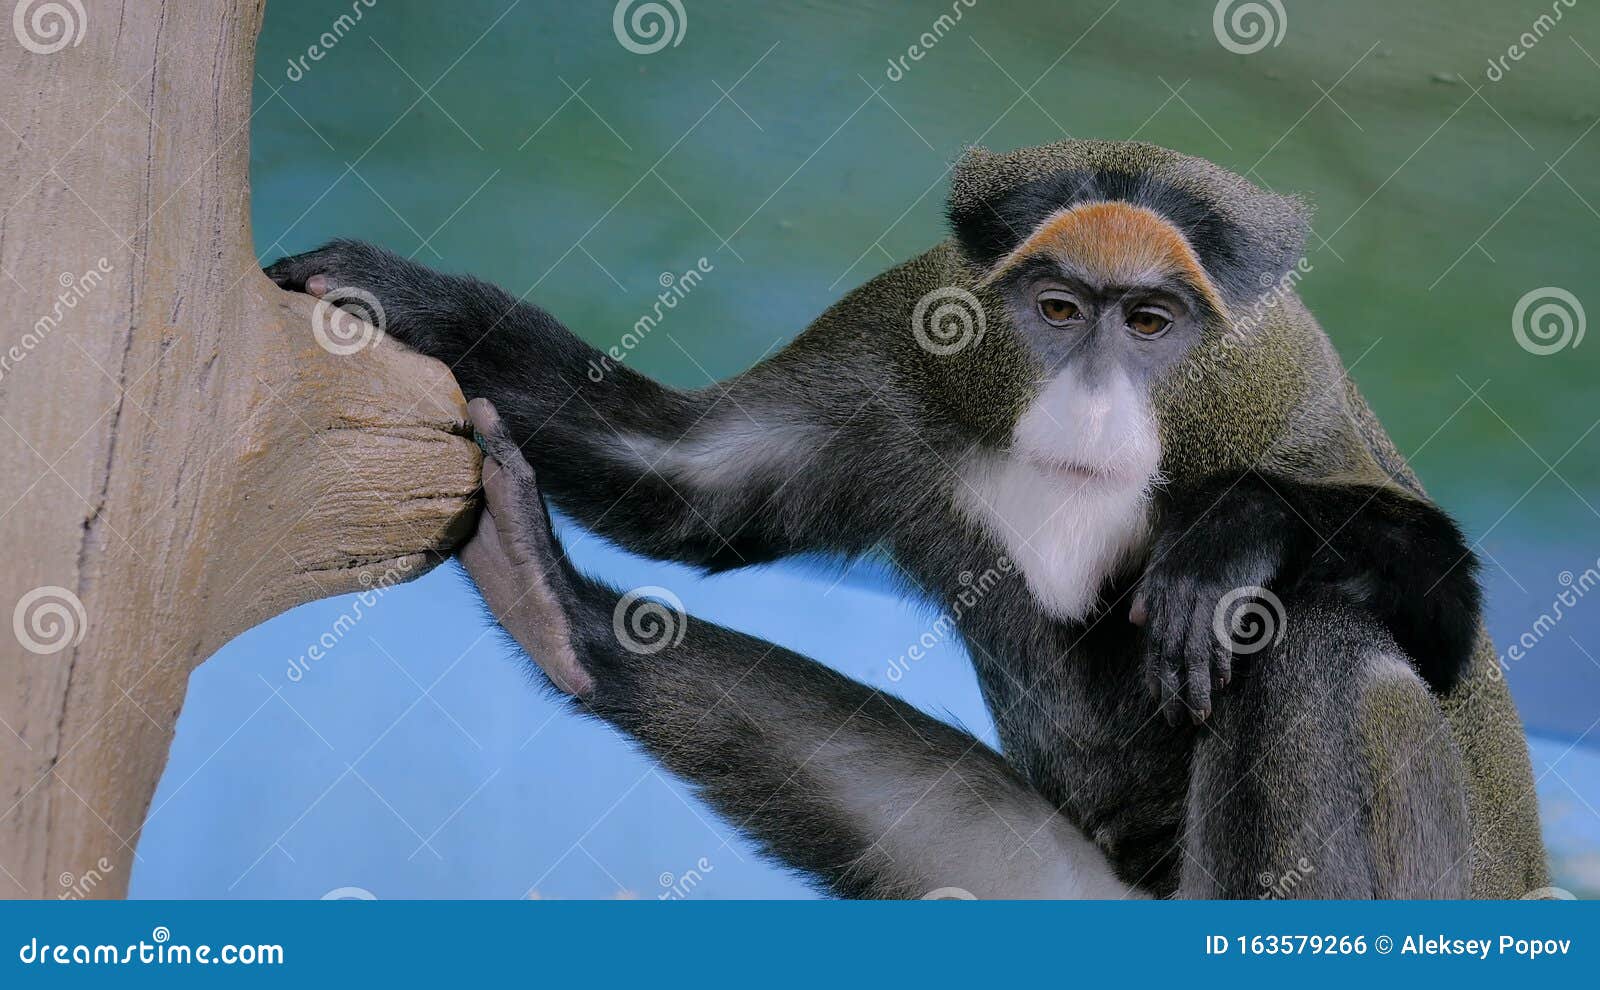 Macaco Chimpanzé Engraçado Cara Animal Isolado Cabeça Desenho Plano Vetor  imagem vetorial de buchan© 549045980